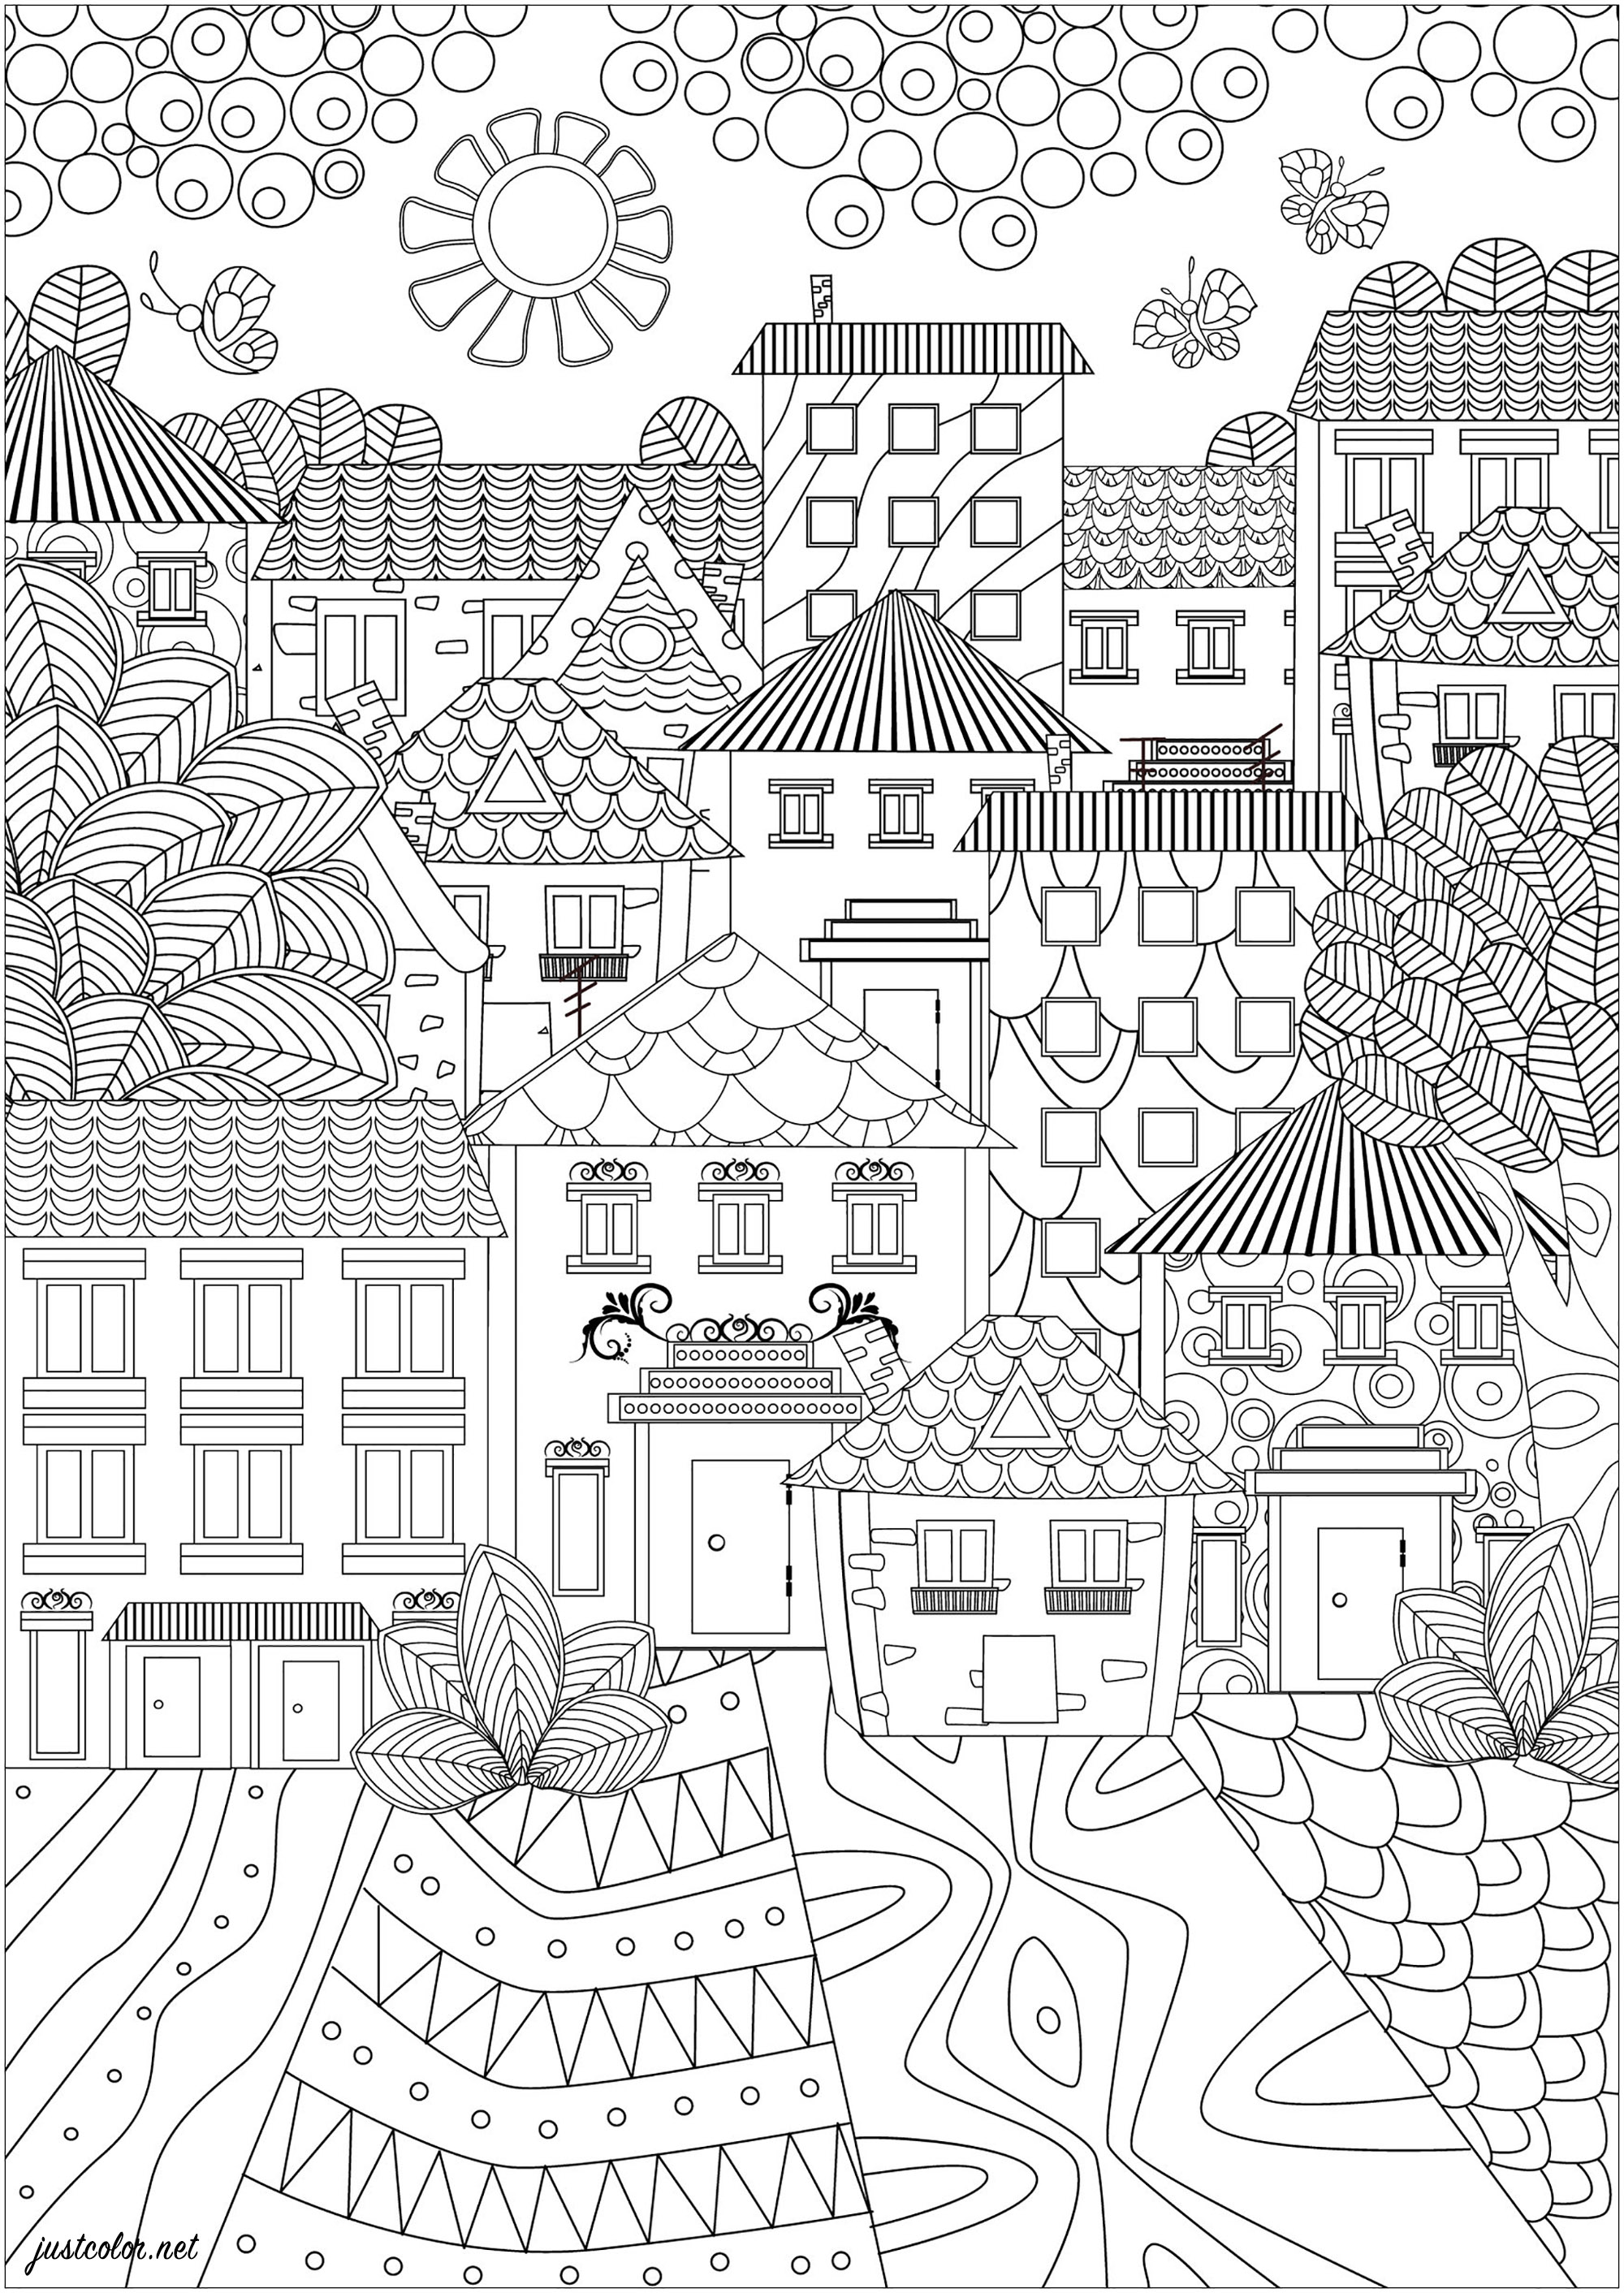 Une ville composée de jolies maisons aux motifs simples et élégants. Ce coloriage est un paysage urbain très simple et élégant. On y voit une ville composée de jolies maisons aux motifs simples et élégants. Les toits sont pointus et les fenêtres sont petites et joliment décorées. Les rues sont pavées de motifs qui seront très agréables à colorier, Source : 123rf   Artiste : Ksym